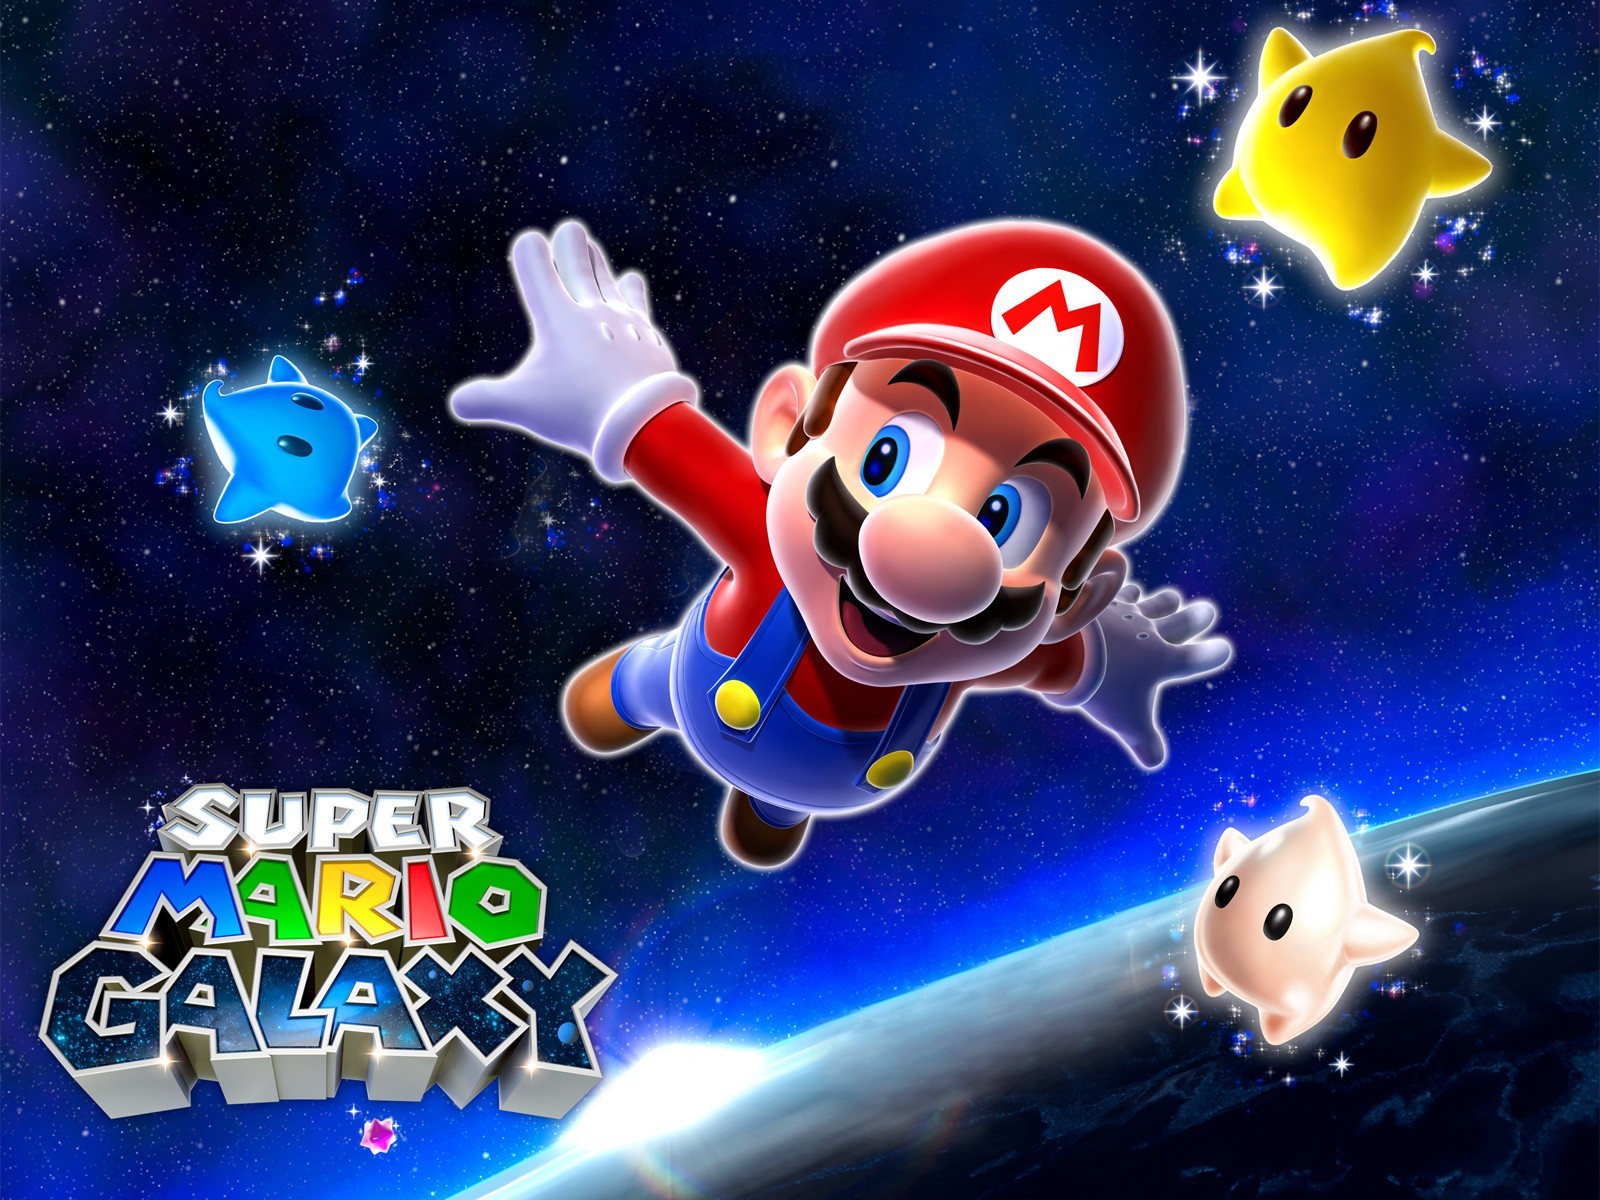 "Super Mario Galaxy" desktop wallpaper (1600 x 1200 pixels)